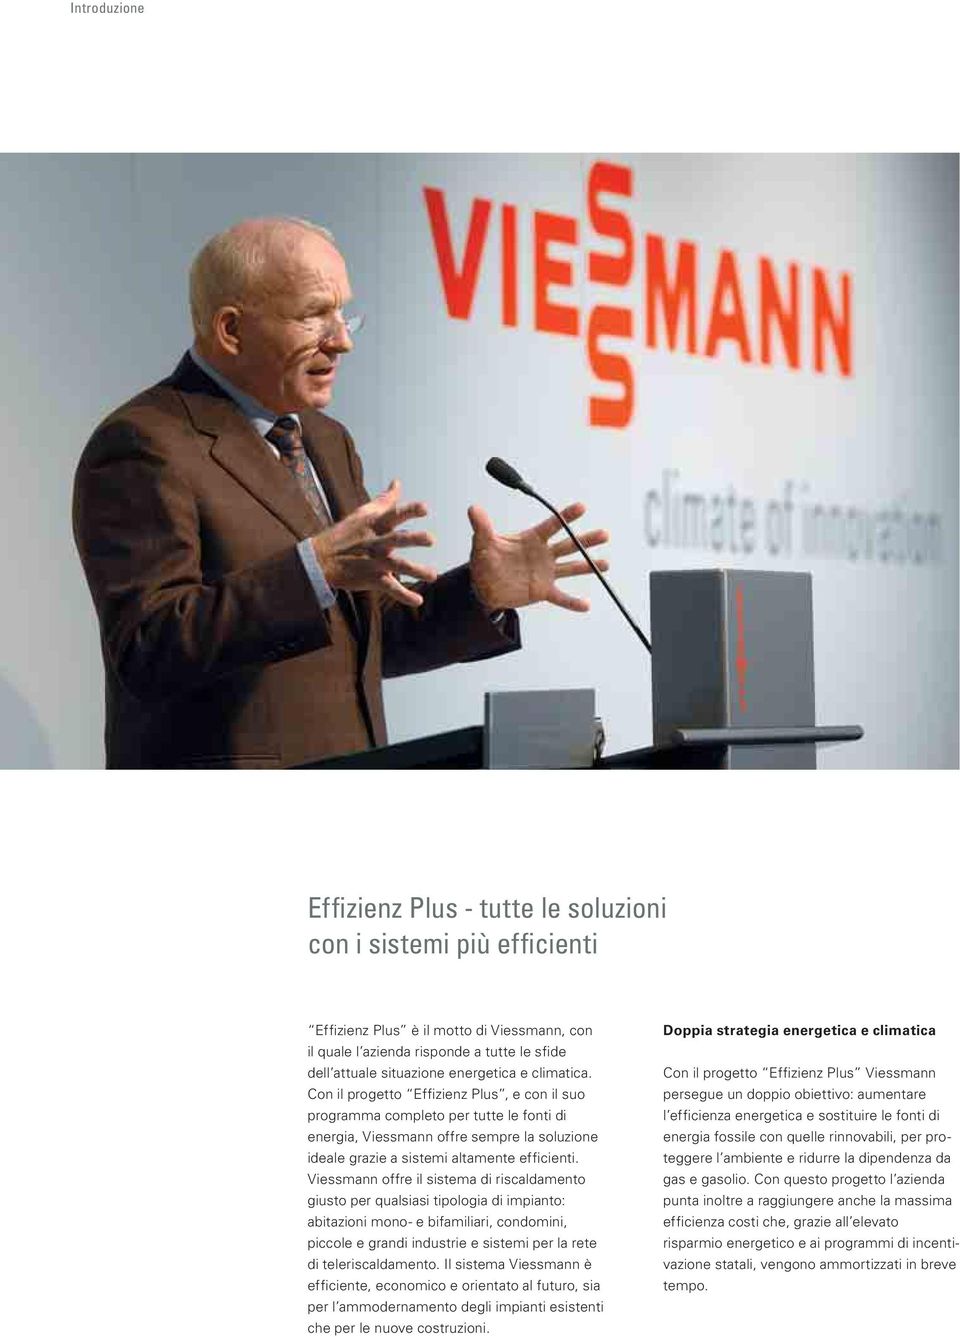 Viessmann offre il sistema di riscaldamento giusto per qualsiasi tipologia di impianto: abitazioni mono- e bifamiliari, condomini, piccole e grandi industrie e sistemi per la rete di